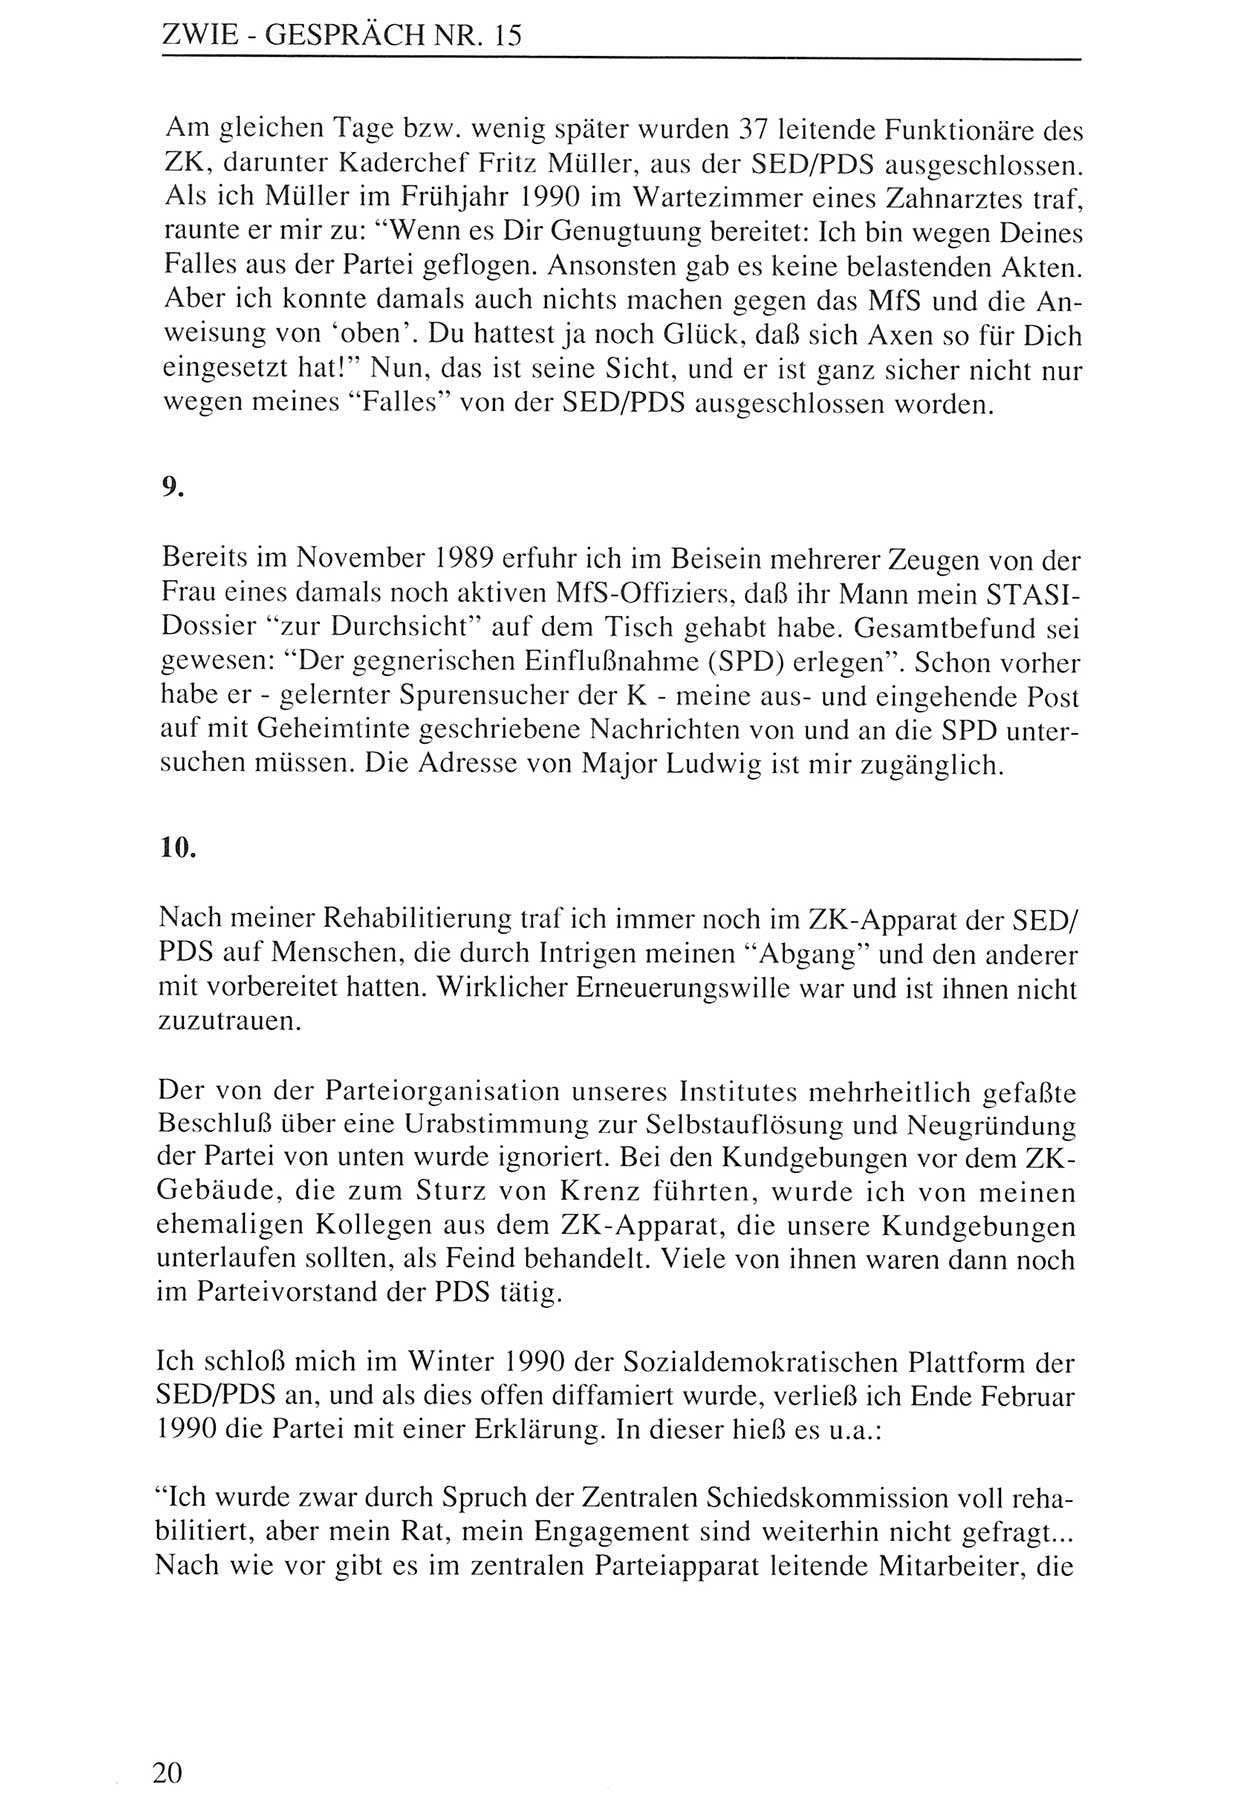 Zwie-Gespräch, Beiträge zur Aufarbeitung der Staatssicherheits-Vergangenheit [Deutsche Demokratische Republik (DDR)], Ausgabe Nr. 15, Berlin 1993, Seite 20 (Zwie-Gespr. Ausg. 15 1993, S. 20)